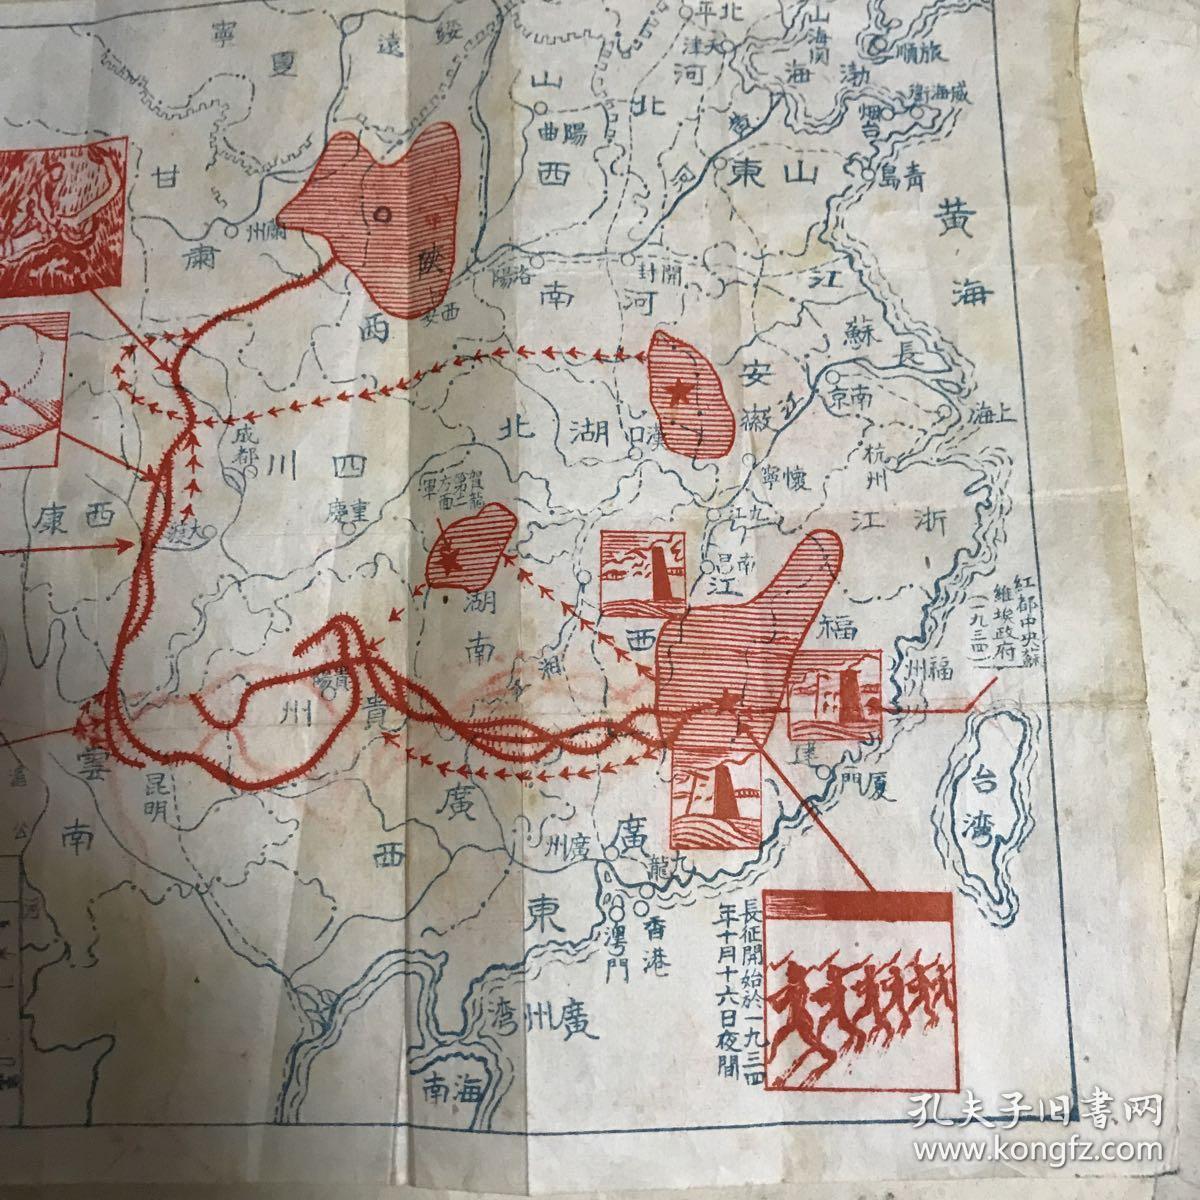 红军长征路线图 应该是民国时期 印刷的!